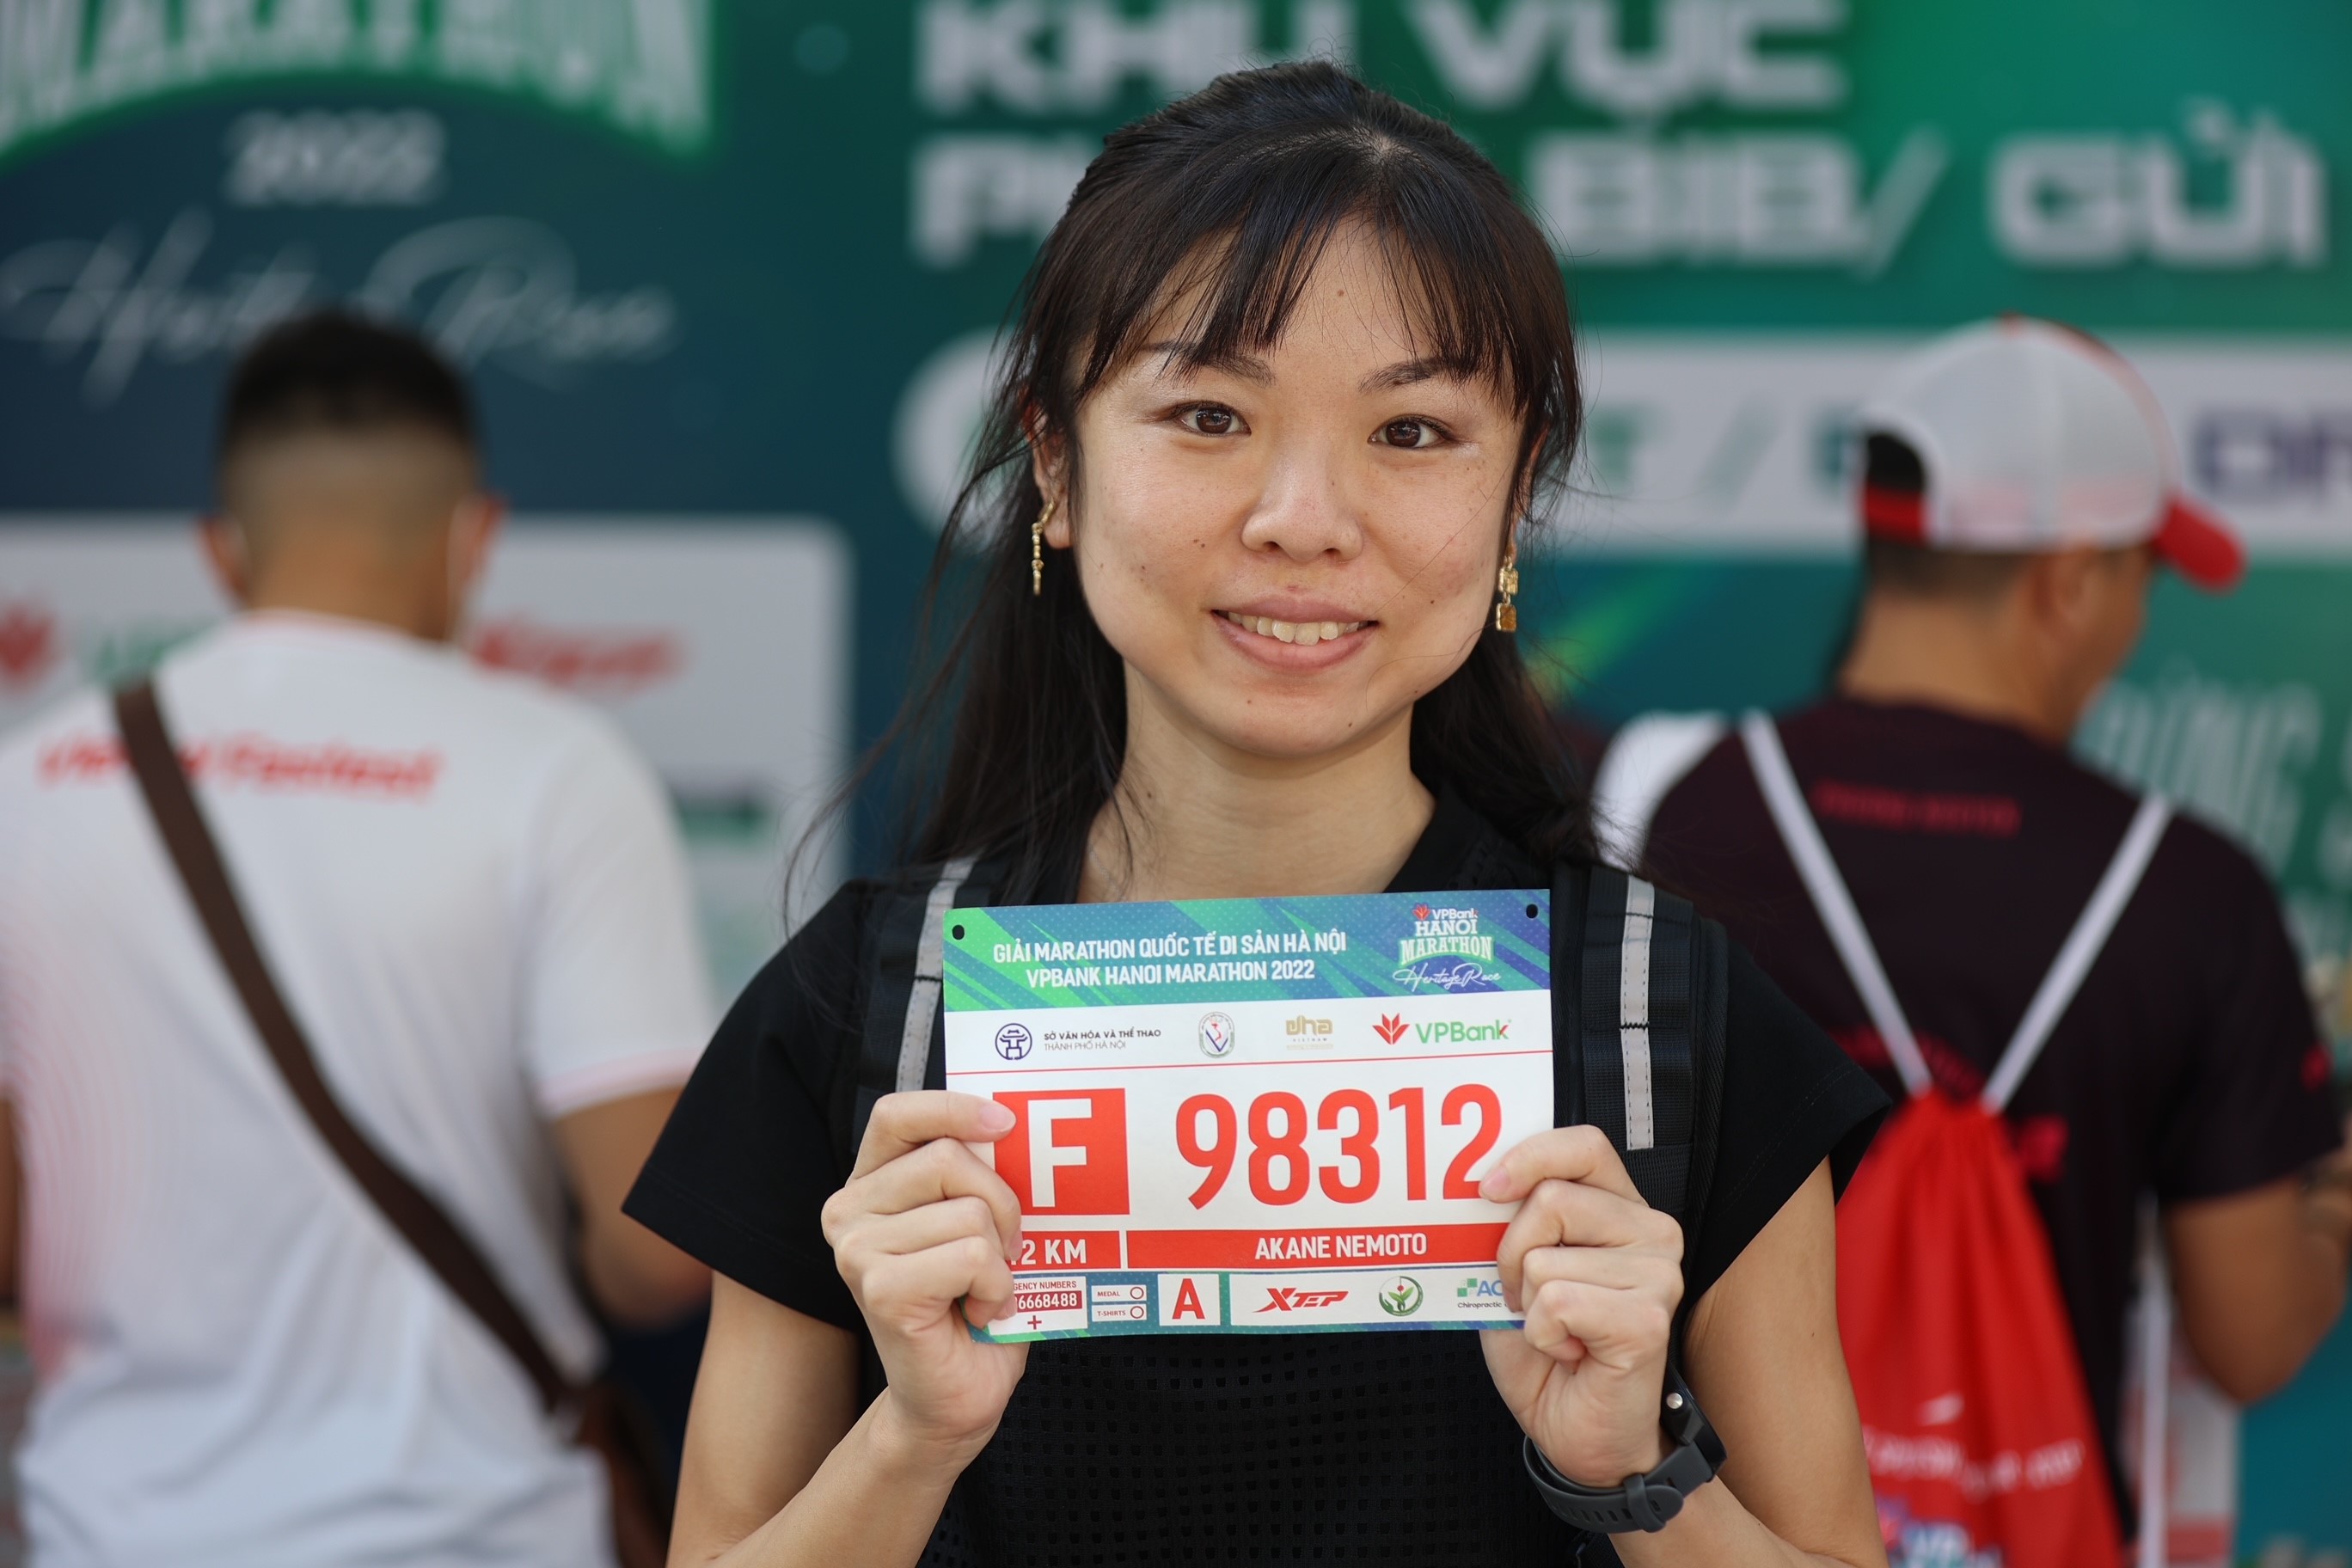 VPHM 2022 cũng đang giữ kỷ lục là giải chạy có nhiều người nước ngoài tham gia nhất từ trước đến nay với hơn 1.000 runner, và chị Akane Nemoto đến từ Nhật Bản là một trong những runner sẽ thi đấu cự ly 42km. Đã sống và làm việc tại Bình Dương hơn 5 năm, nhưng đây là lần đầu tiên chị Nemoto tham gia VPHM. “Rất nhiều bạn bè tôi đã “mách” rằng đây là một trong những giải martahon tuyệt nhất của Việt Nam, khi vừa được chạy vừa được ngắm những điểm đến đẹp nhất của Hà Nội” - chị Nemoto nói và cho biết, vừa đáp máy bay xuống Hà Nội là chị đã đến nhận bib ngay. “Tôi thật sự rất háo hức được chinh phục VPHM 2022 ngày mai”.